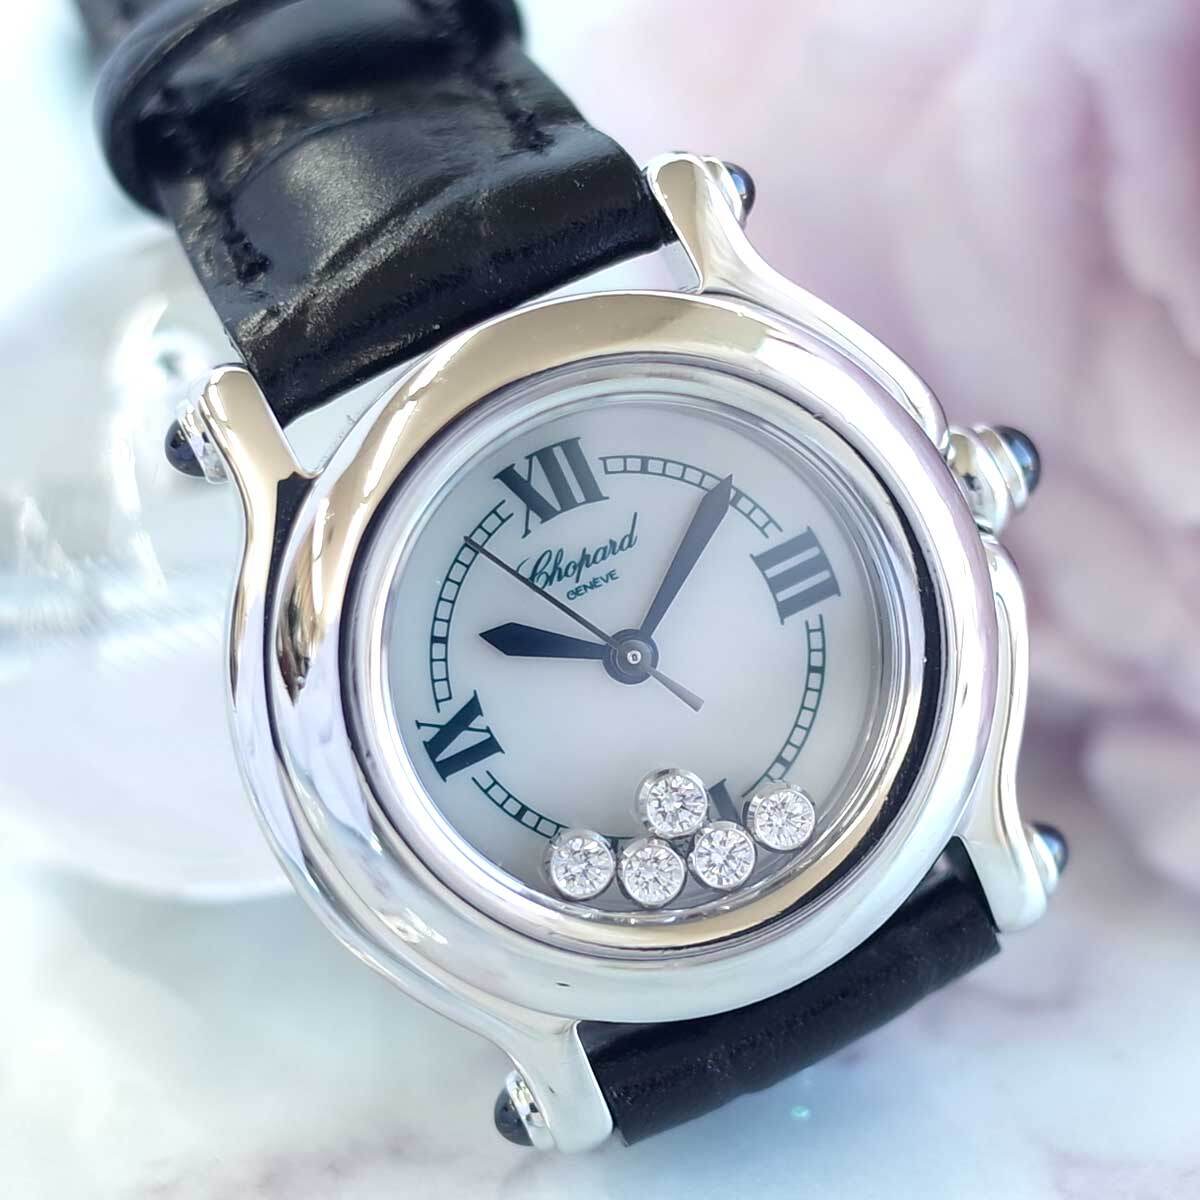  прекрасный товар Chopard happy спорт 8245 ракушка diamond ювелирные изделия часы новый товар ремень гарантия иметь женский кварц наручные часы CHOPARD 1 год гарантия 